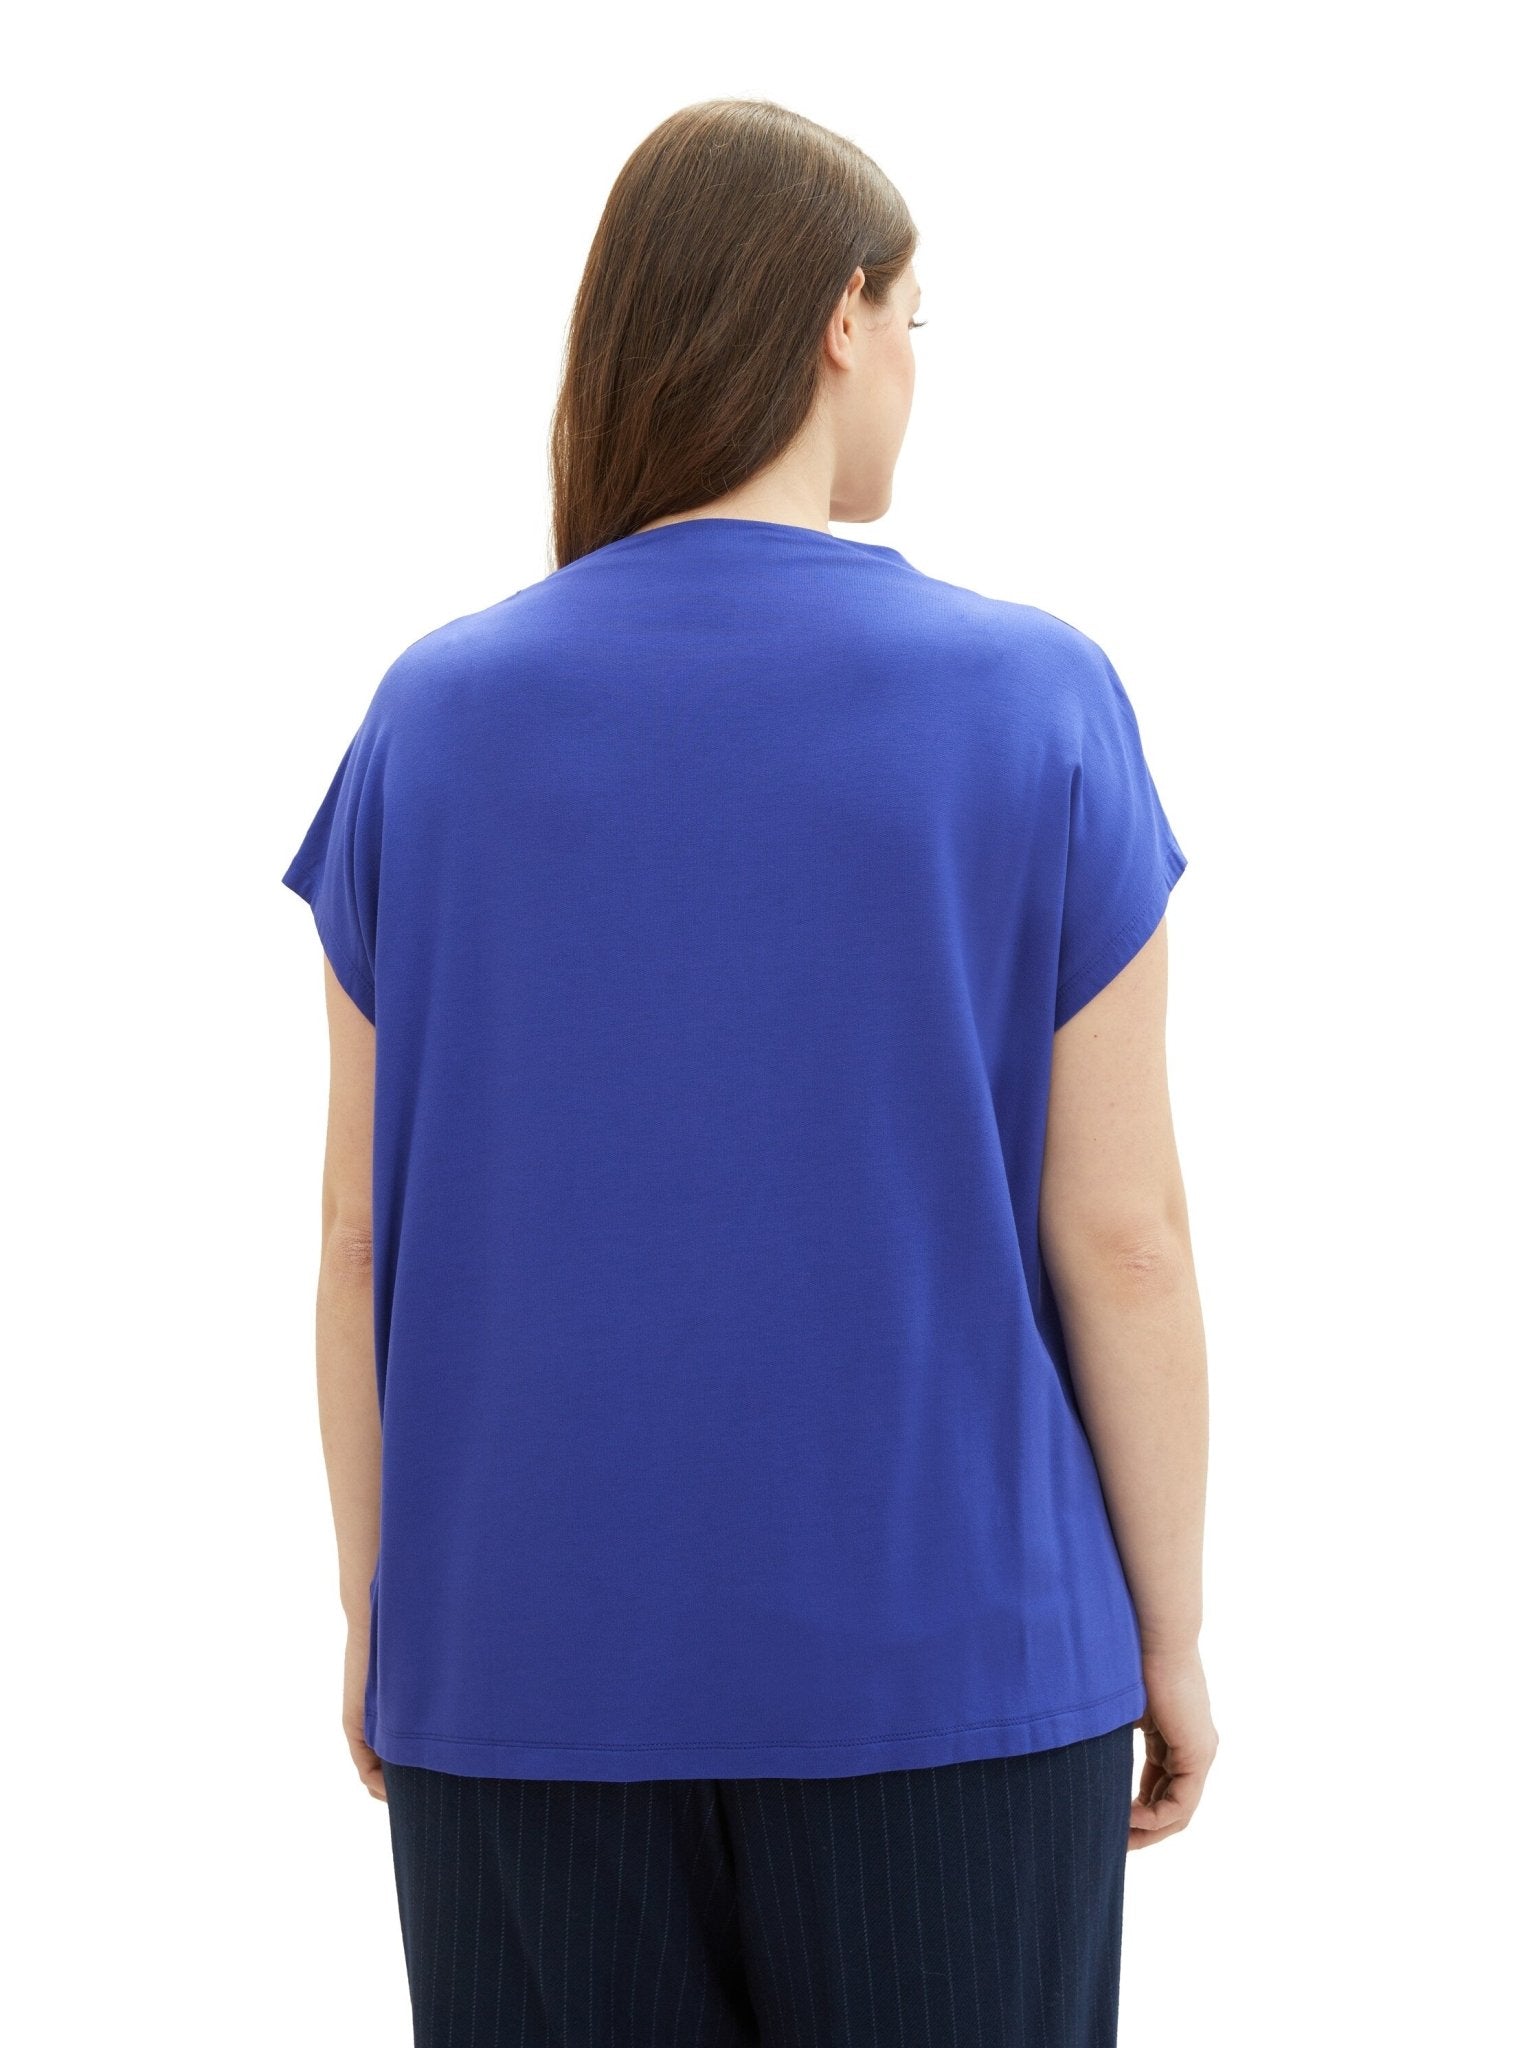 1040059T-Shirt mit Stehkragen Imagine blau - Wildflowers44Blau